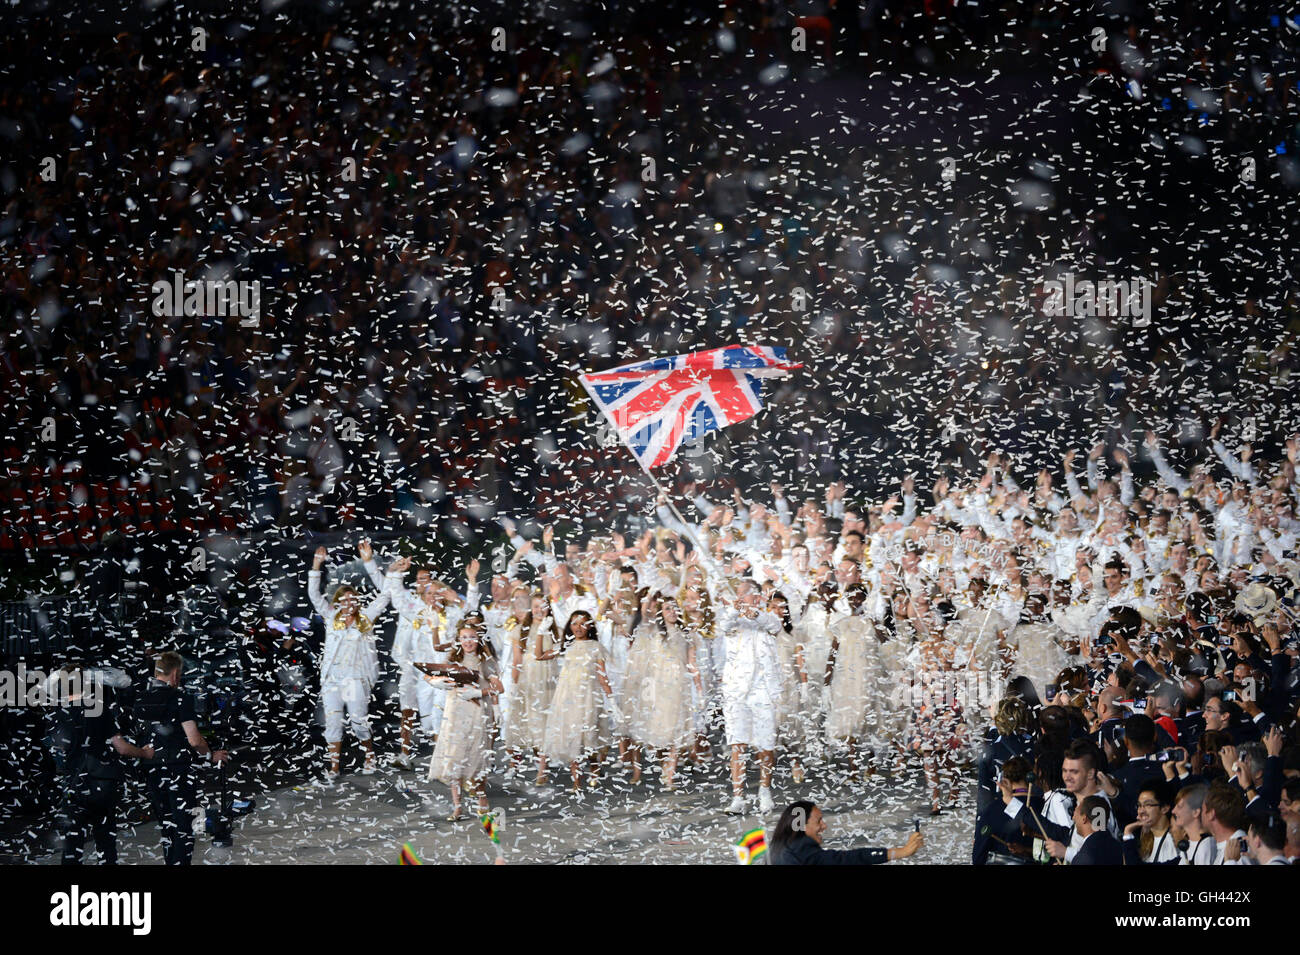 Equipo de Gran Bretaña entrando en el Estadio Olímpico durante la ceremonia de apertura de los Juegos Olímpicos de Londres. Foto de stock